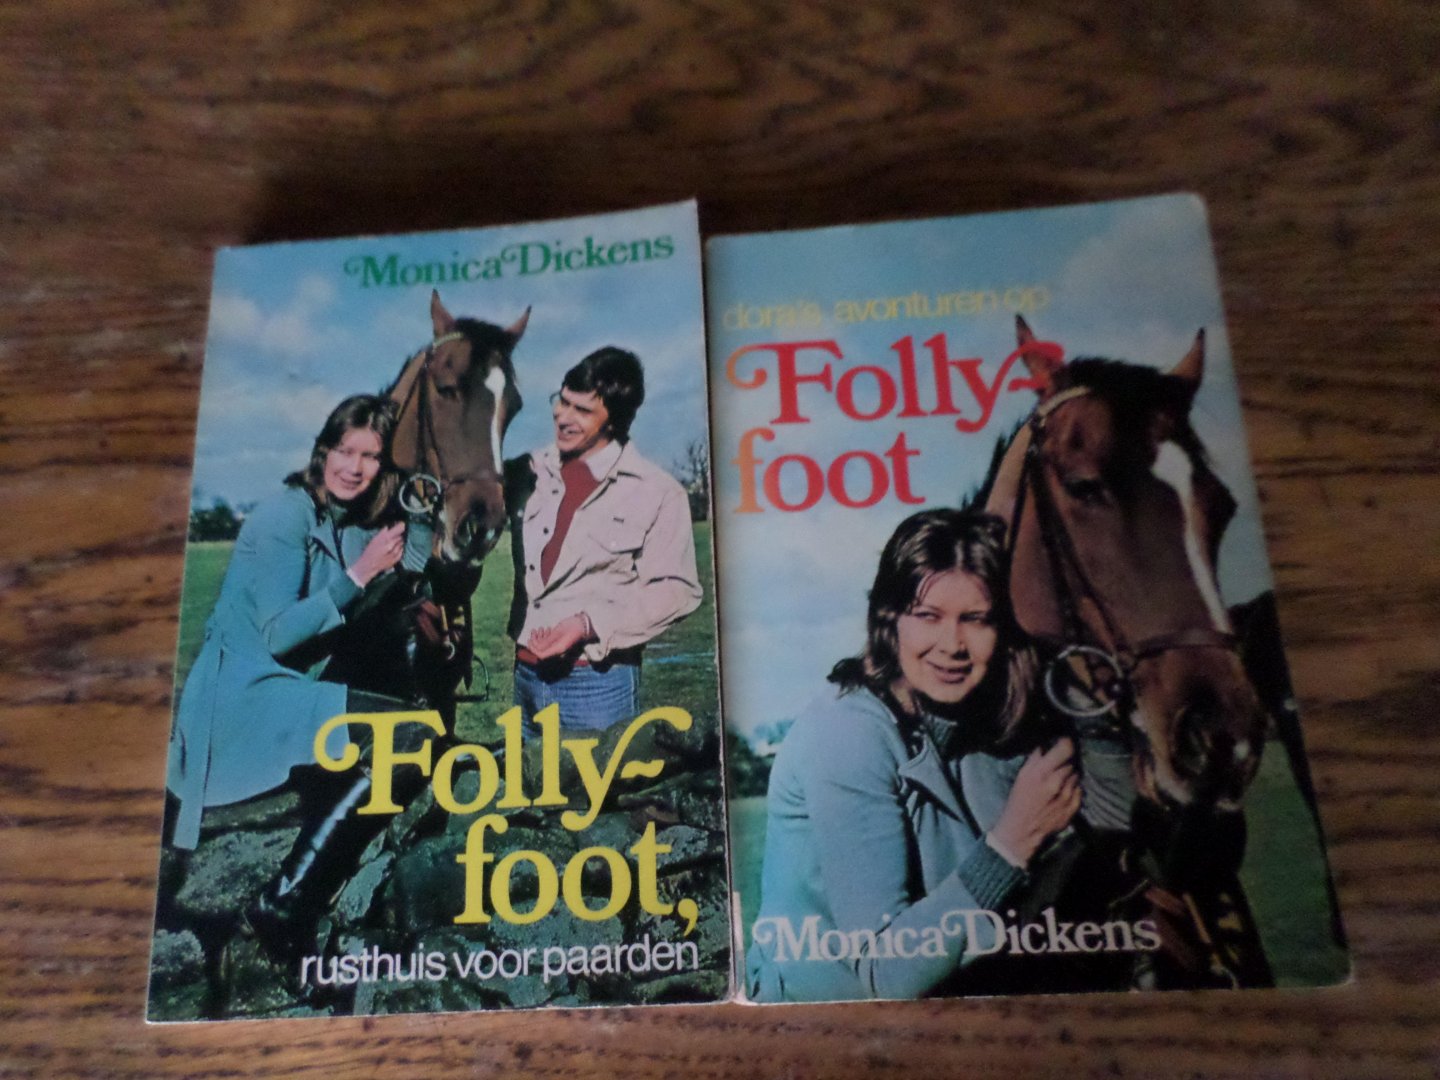 Dickens, Monica - Follyfoot, rusthuis voor paarden